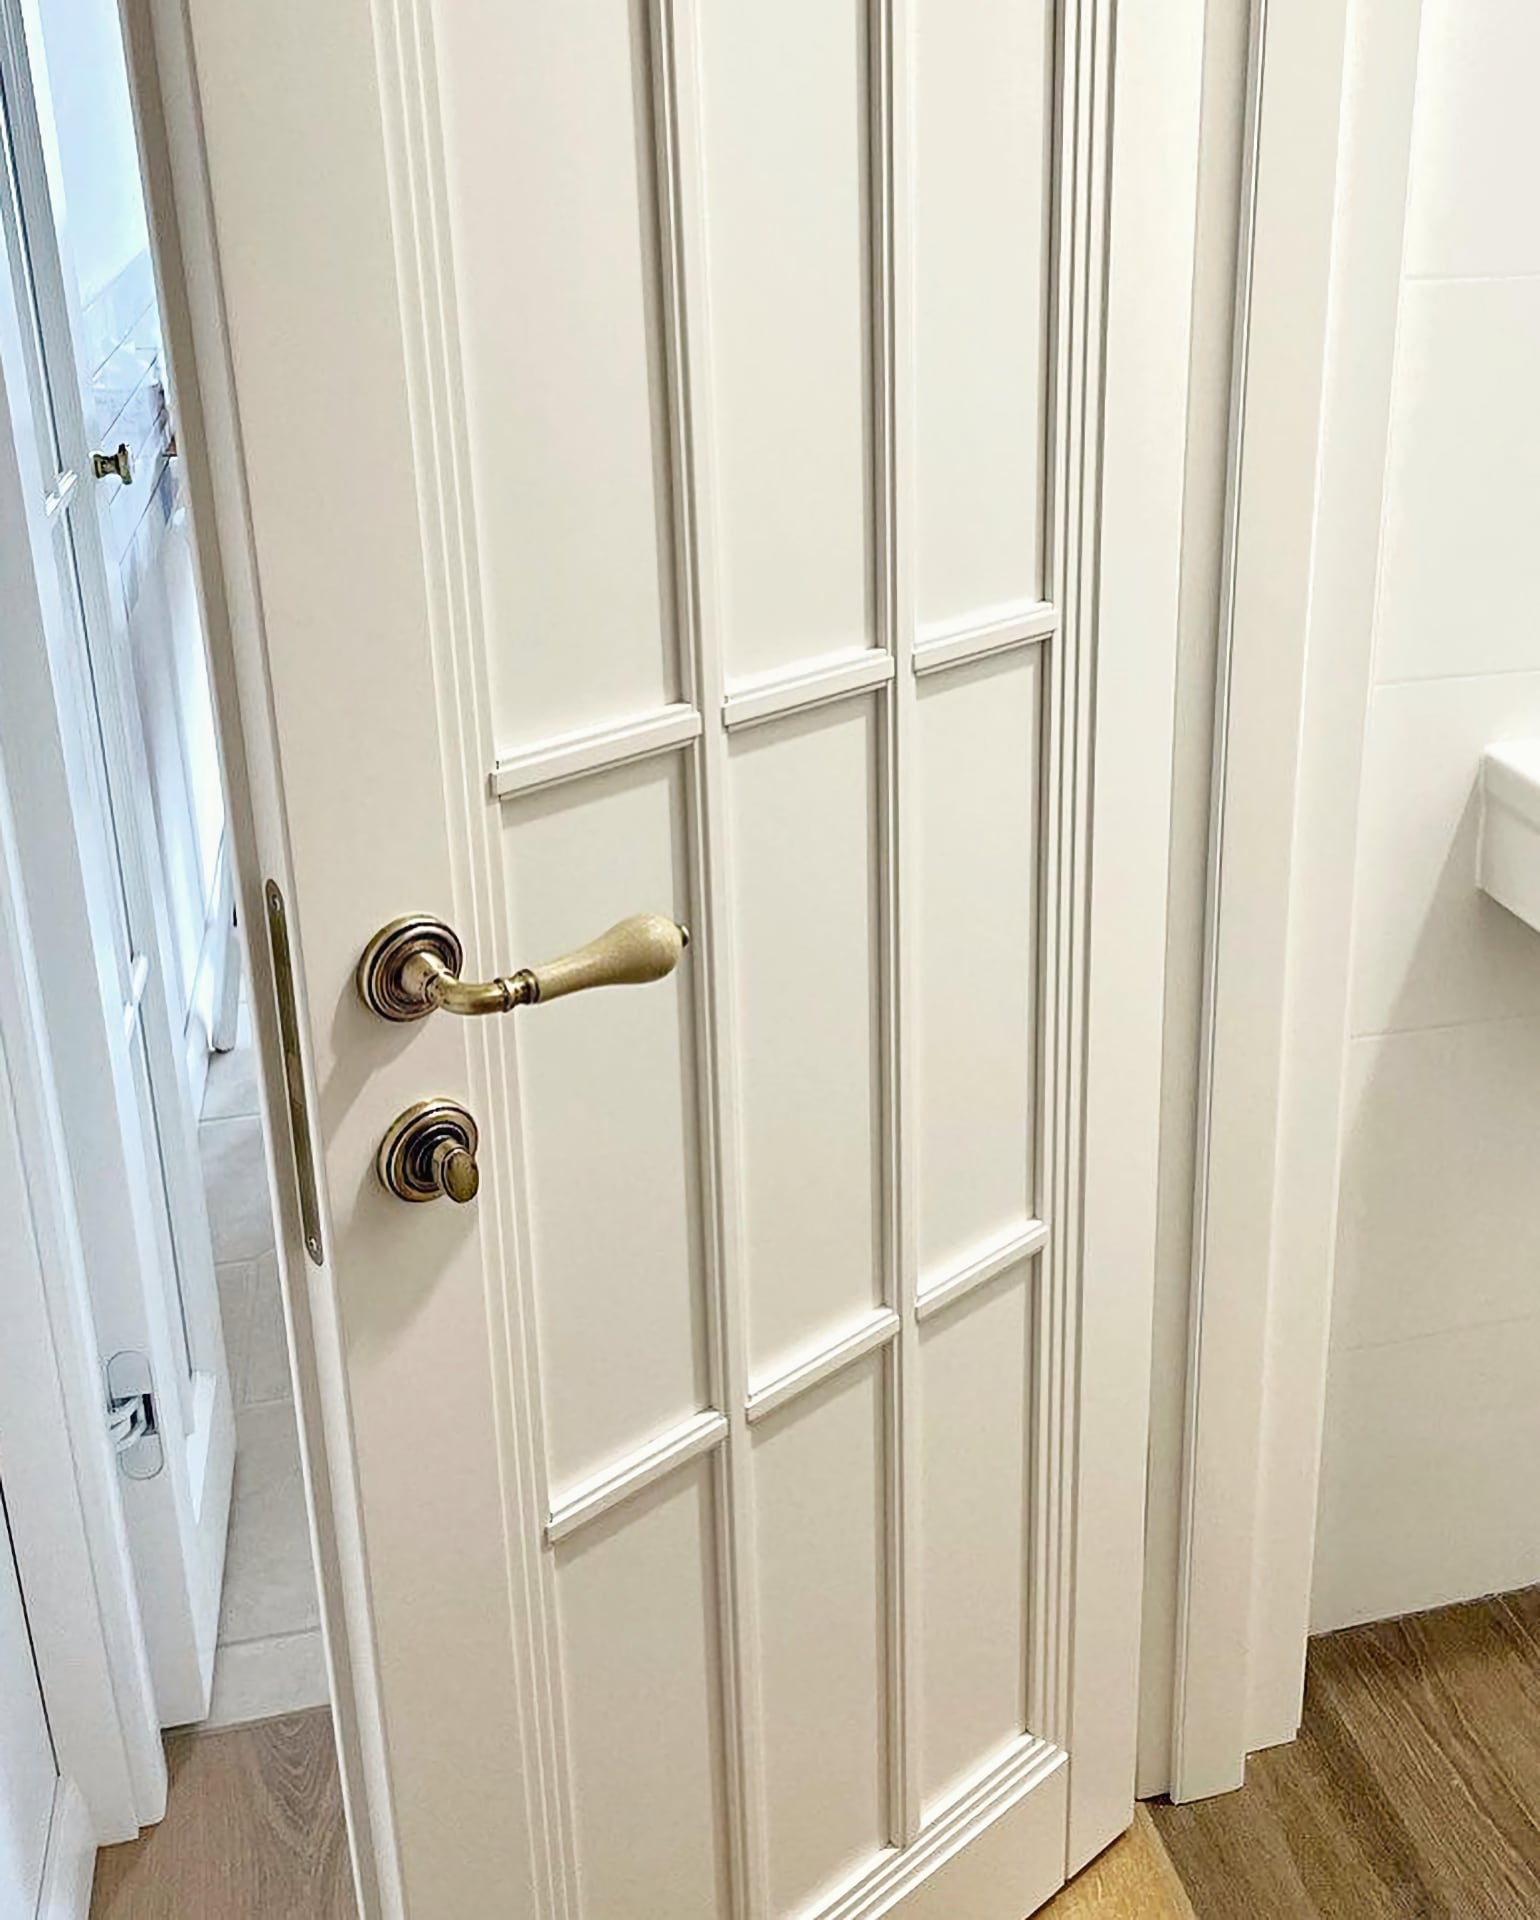 Двойные двери – глухое полотно, видно качественную фурнитуру с защёлкой